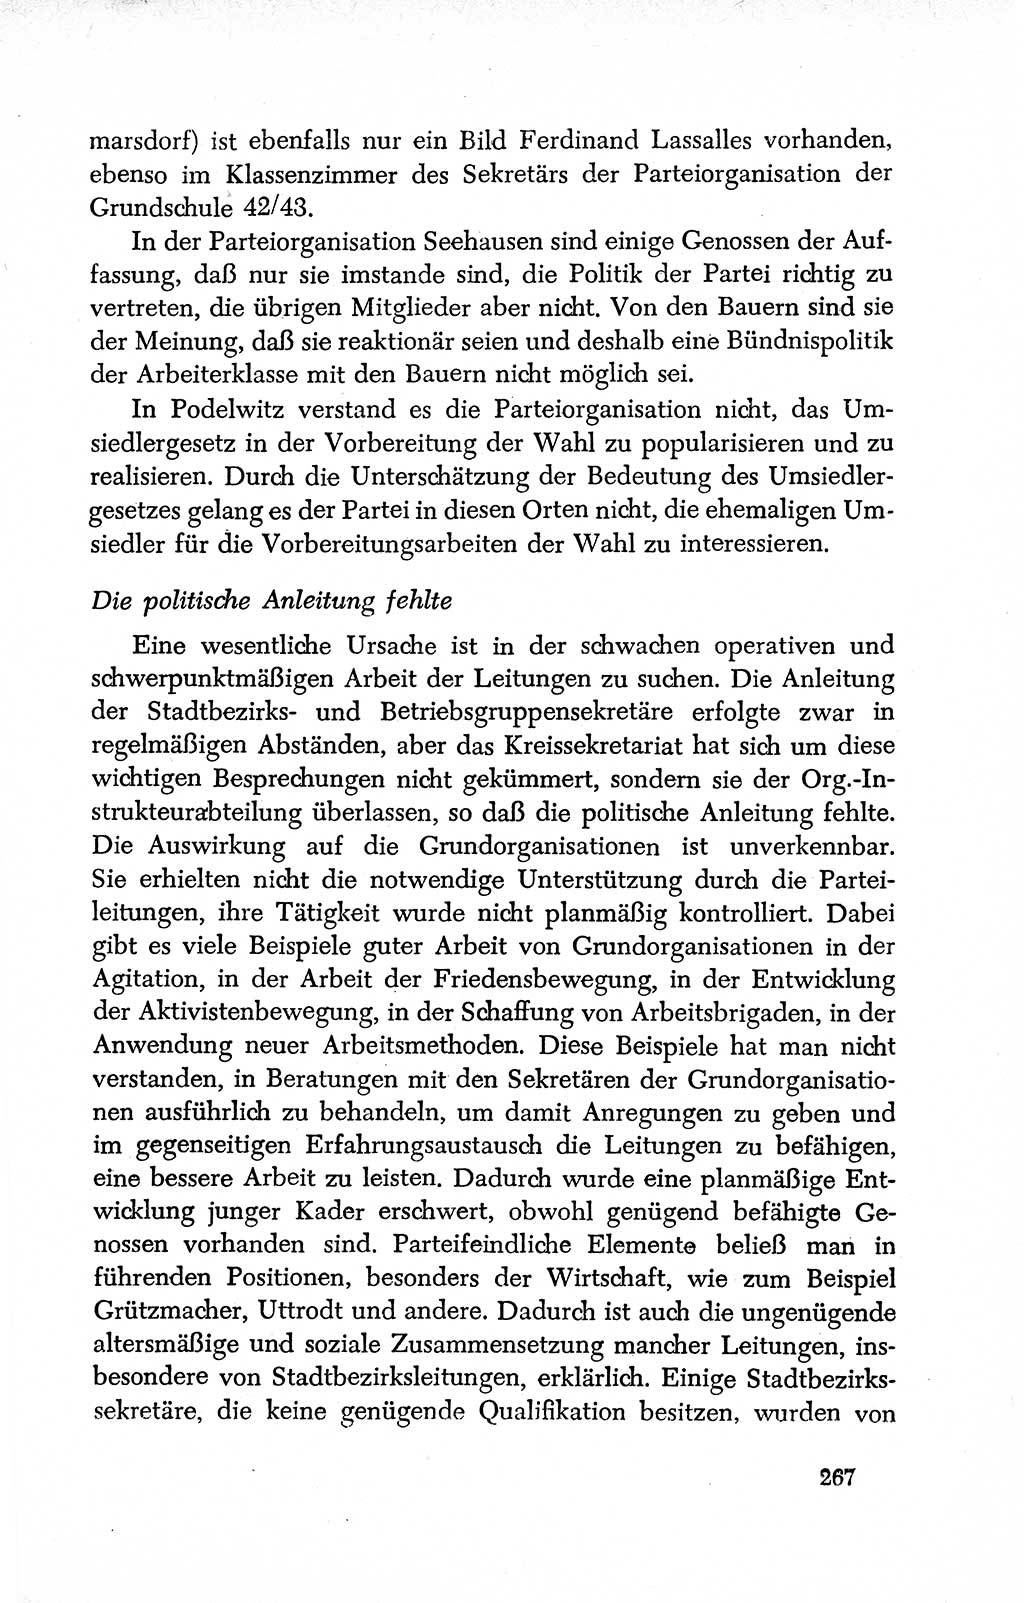 Dokumente der Sozialistischen Einheitspartei Deutschlands (SED) [Deutsche Demokratische Republik (DDR)] 1950-1952, Seite 267 (Dok. SED DDR 1950-1952, S. 267)